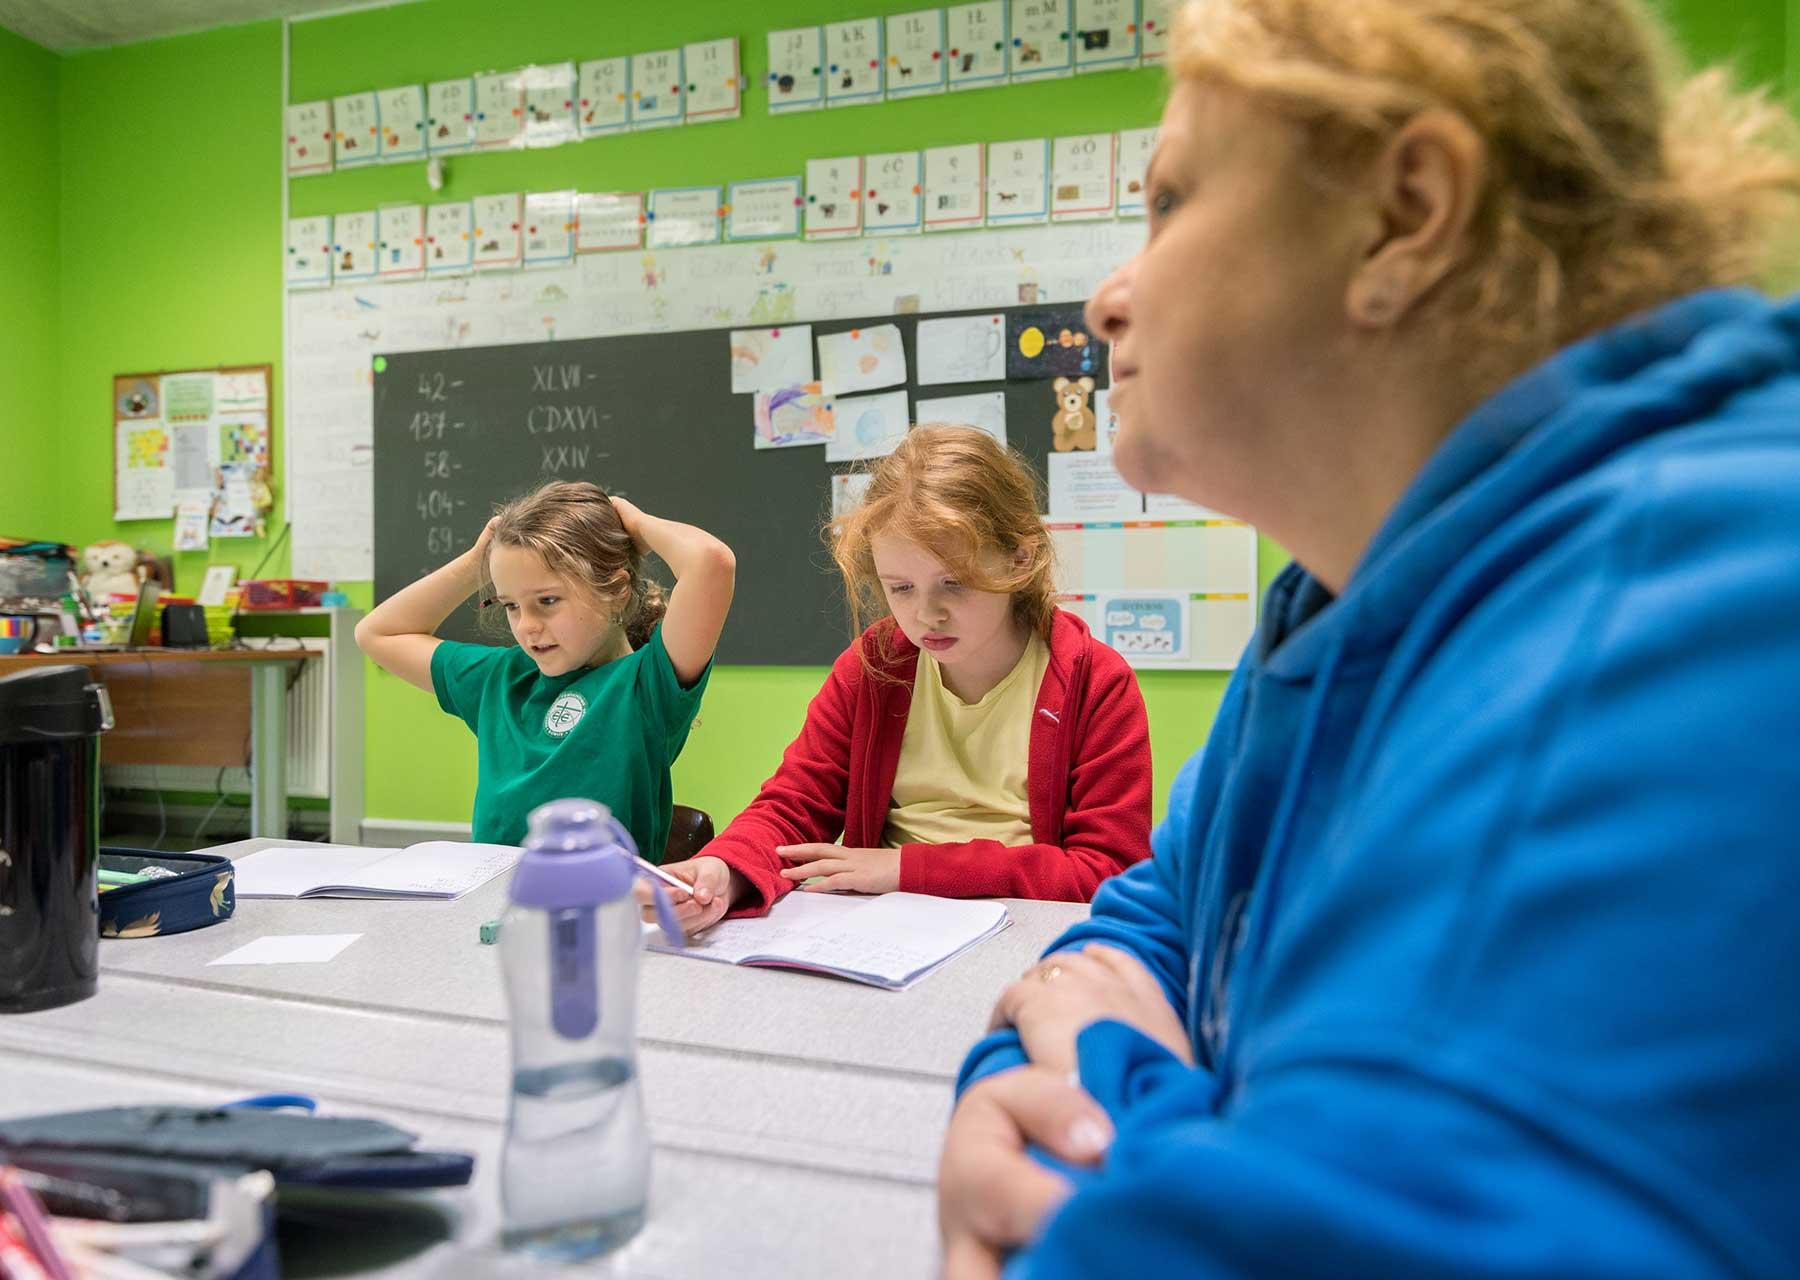 Ukrainische Flüchtlingskinder in einer Schule in Gliwice, Polen. Für viele Familien beginnt die Integration im Gastland damit, dass sie ihre Kinder statt Onlineunterricht in eine lokale Schule schicken